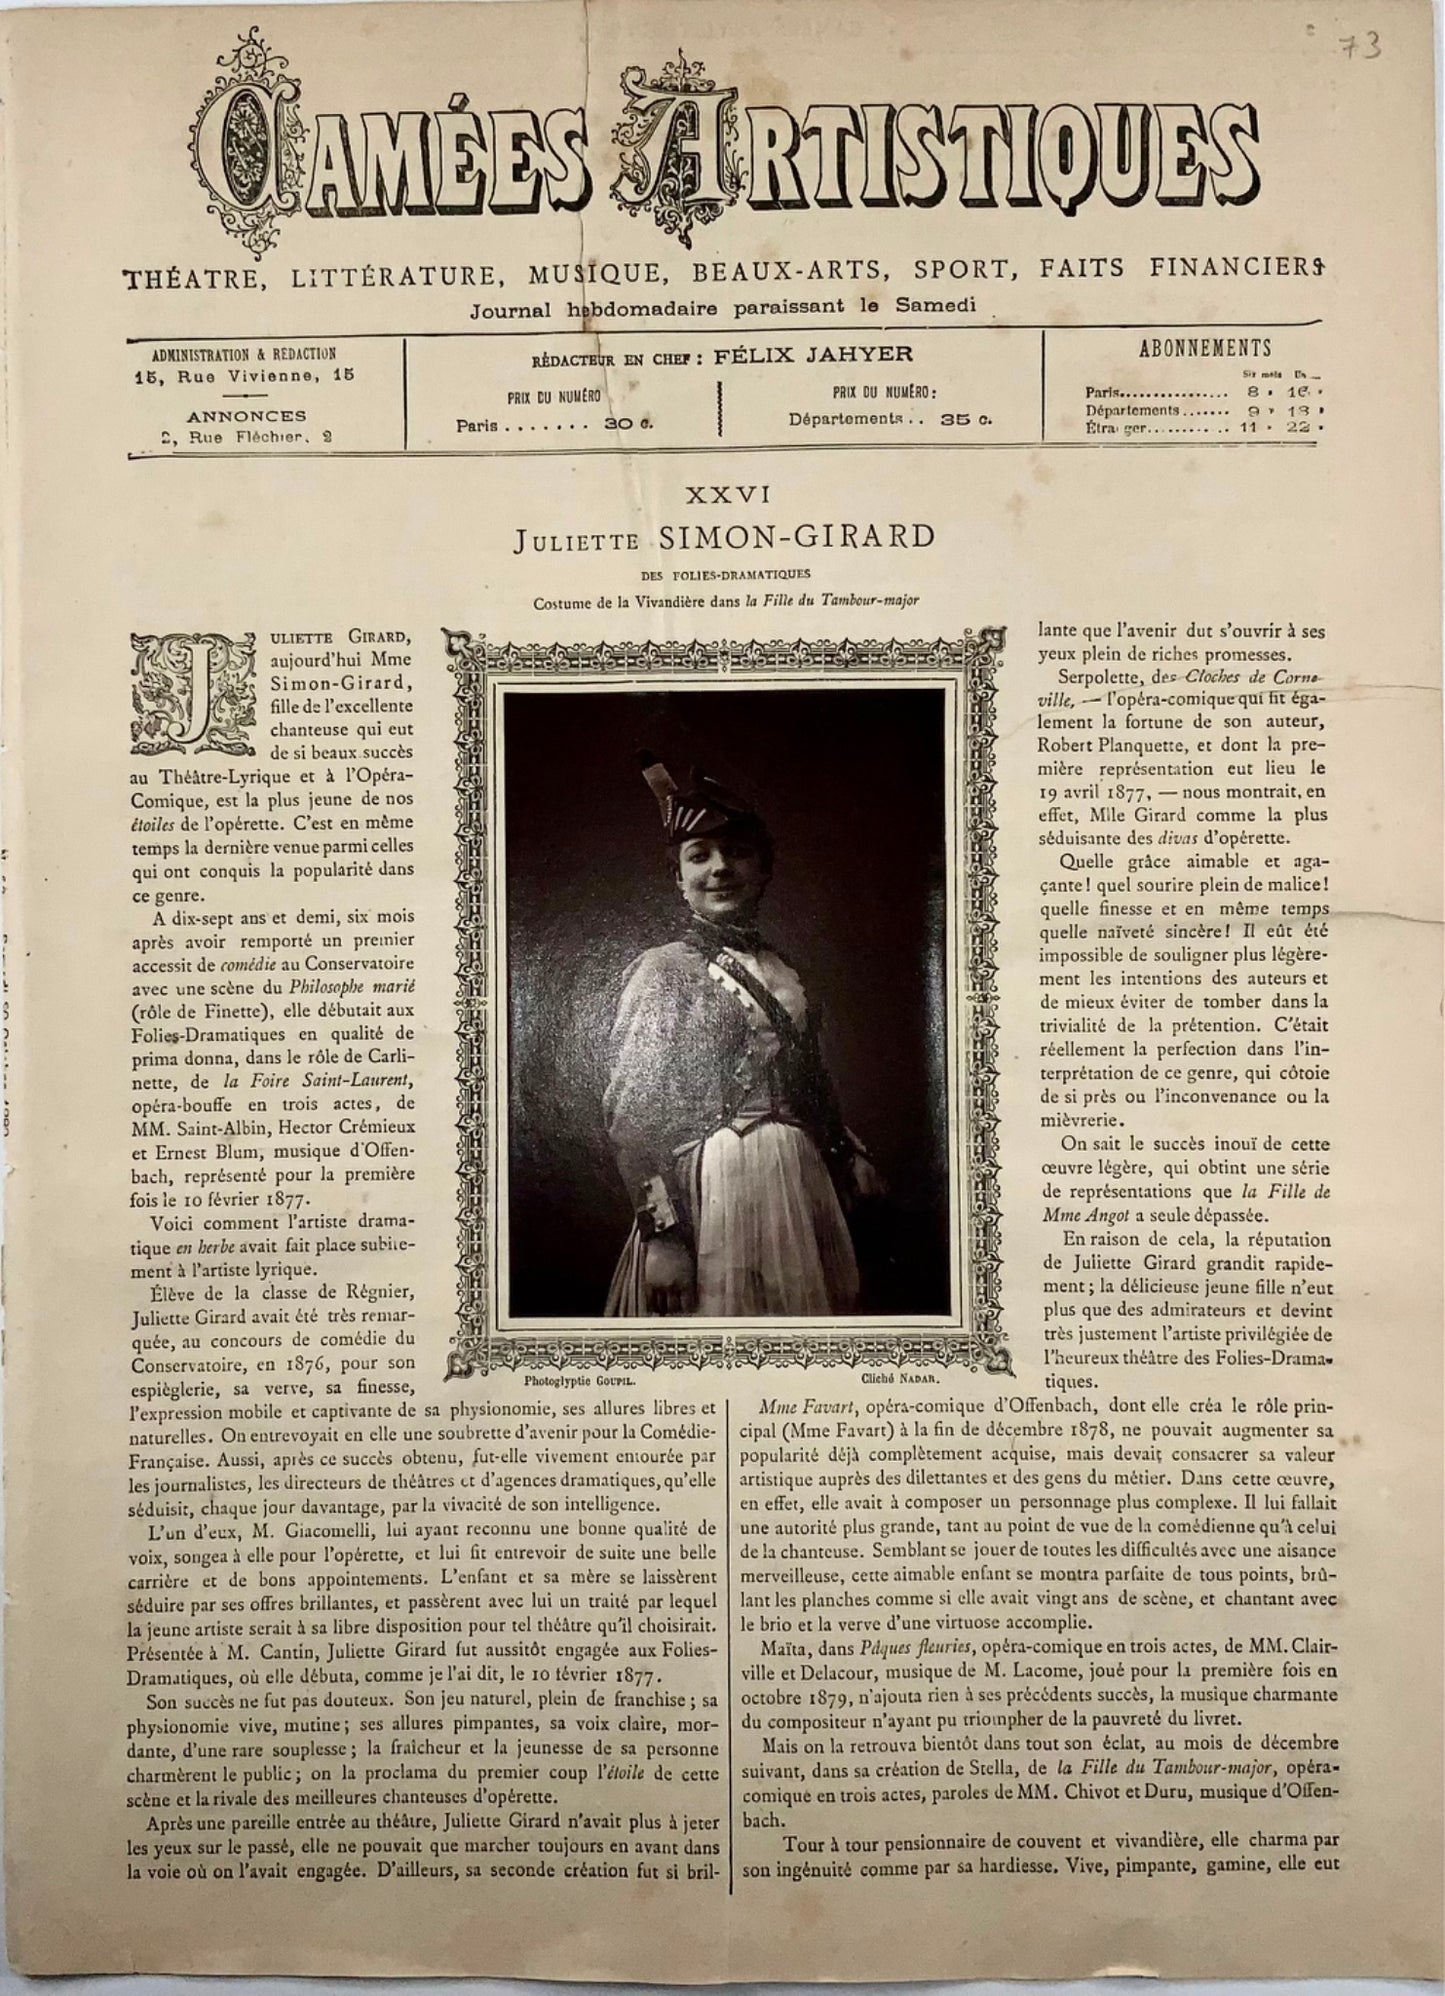 1887 Juliette Simon-Girard, Camées Artistiques avec photographie, journal